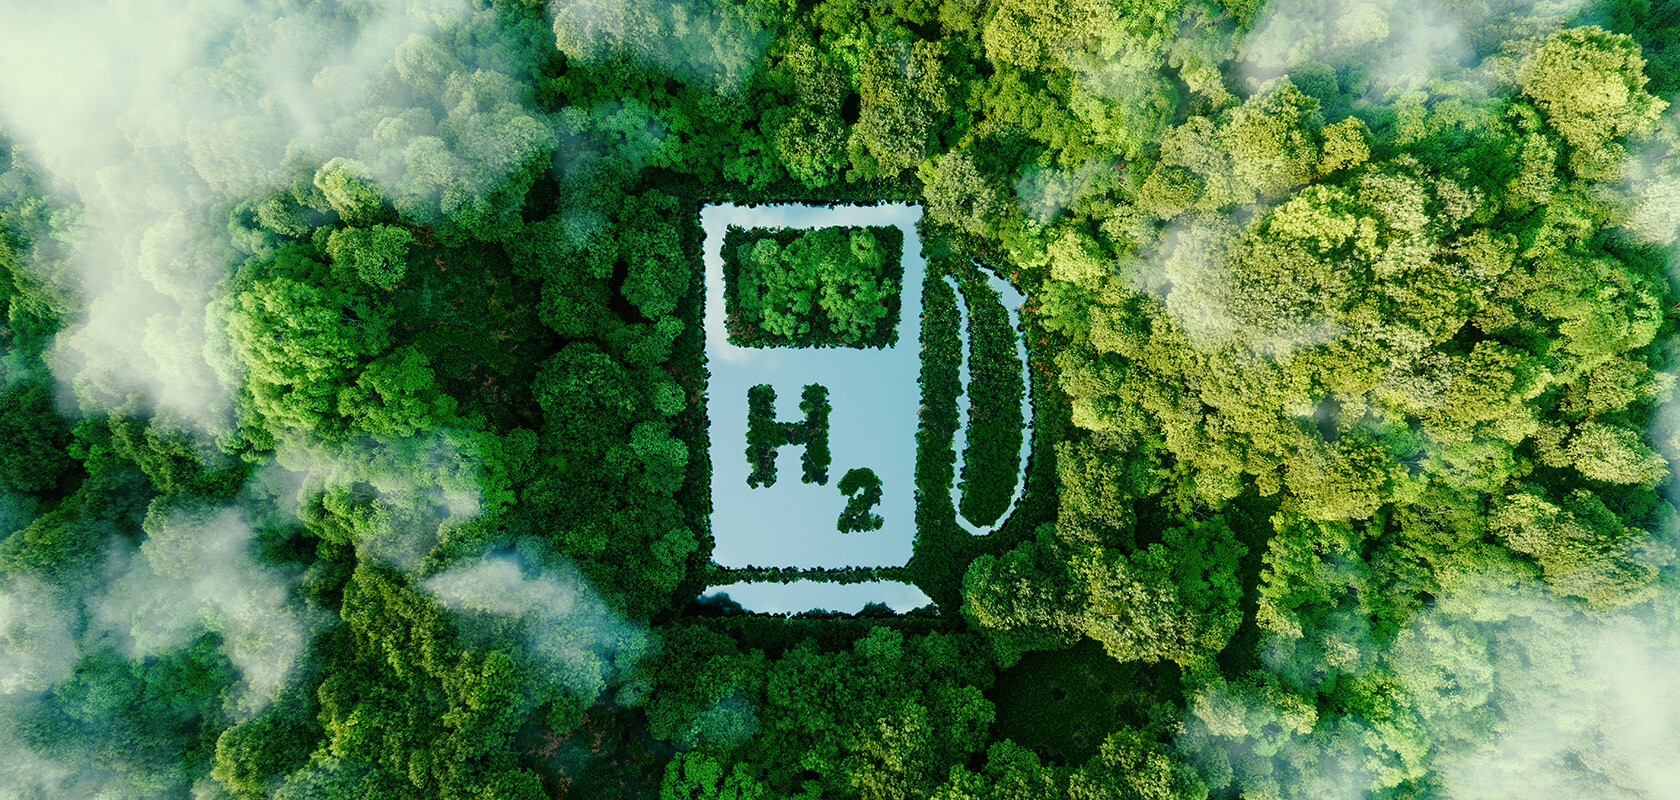 zelenyj vodorod - Индия определяет «зеленый водород» и выделяет 7 млрд на электробусы